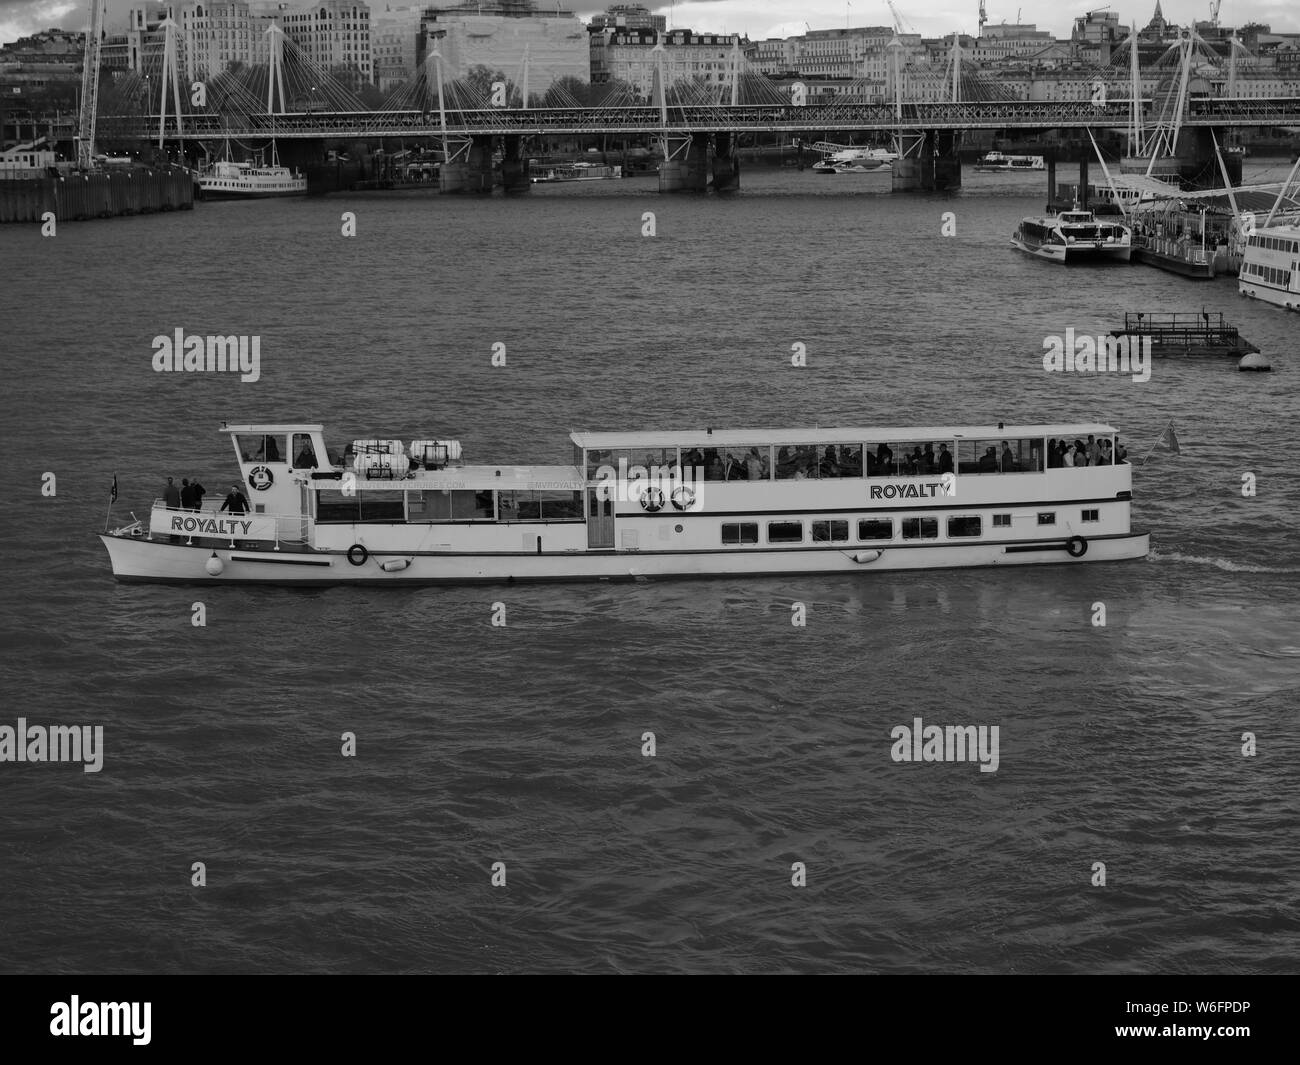 Crociera turistica barca la royalty gira sul fiume Tamigi sul suo viaggio breve viaggio con il Golden Jubilee passerella in background in Londra. Foto Stock